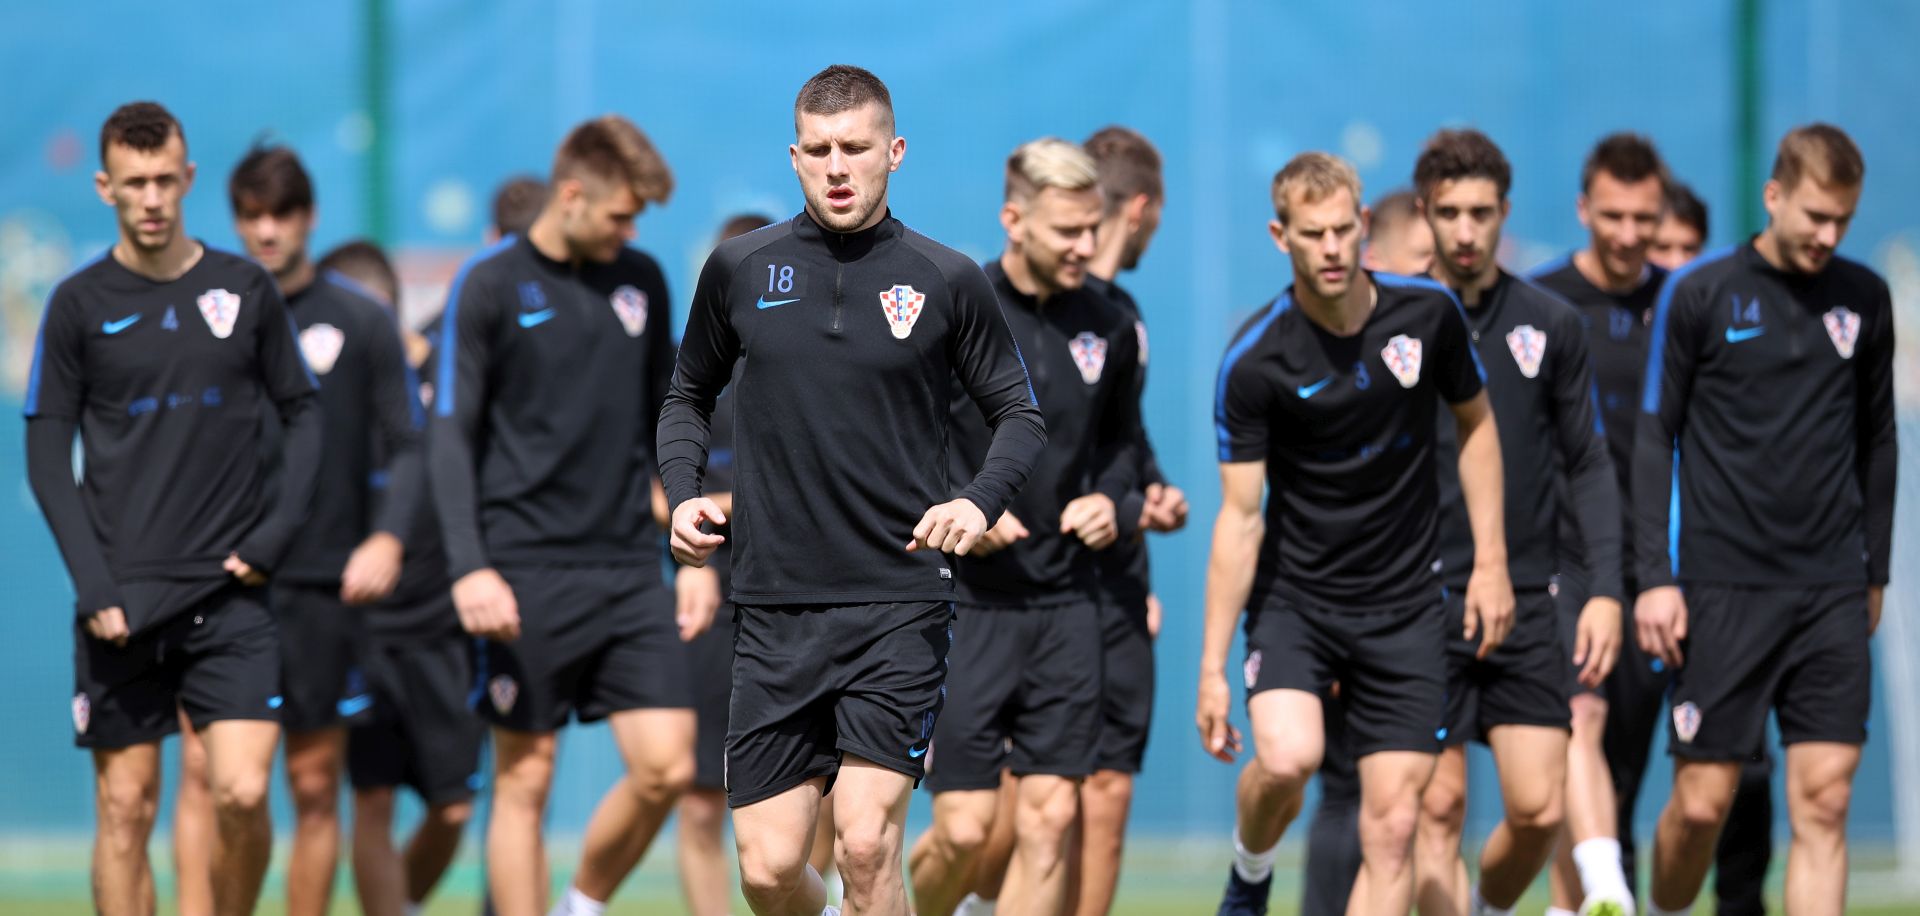 Roèino, 19.06.2018 - Trening Hrvatske nogometne reprezentacije na Roèino Areni. Na slici Ante Rebiæ.
foto HINA/ Damir SENÈAR /ds